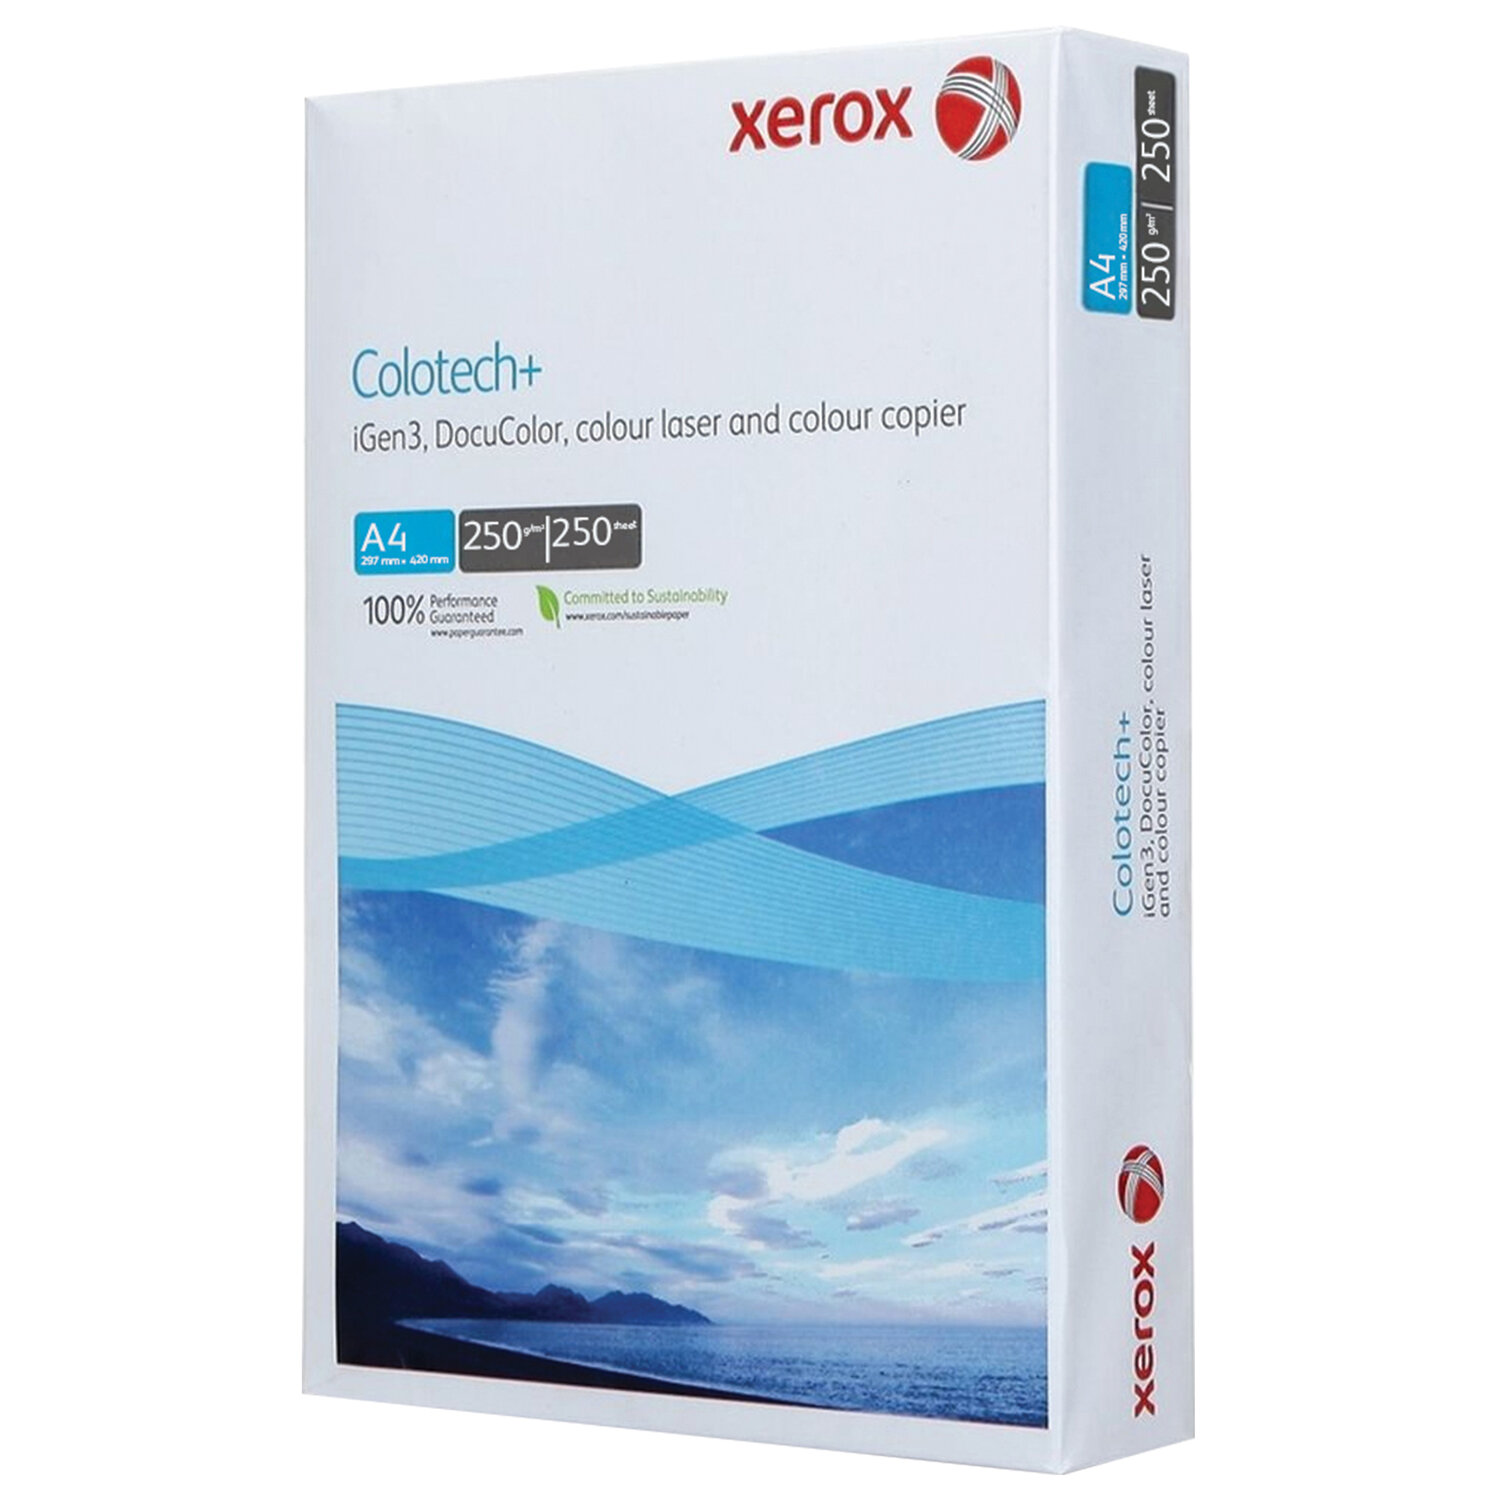      XEROX COLOTECH+ Blue 003R94671, 4, 250 /2, 250 ., 161%